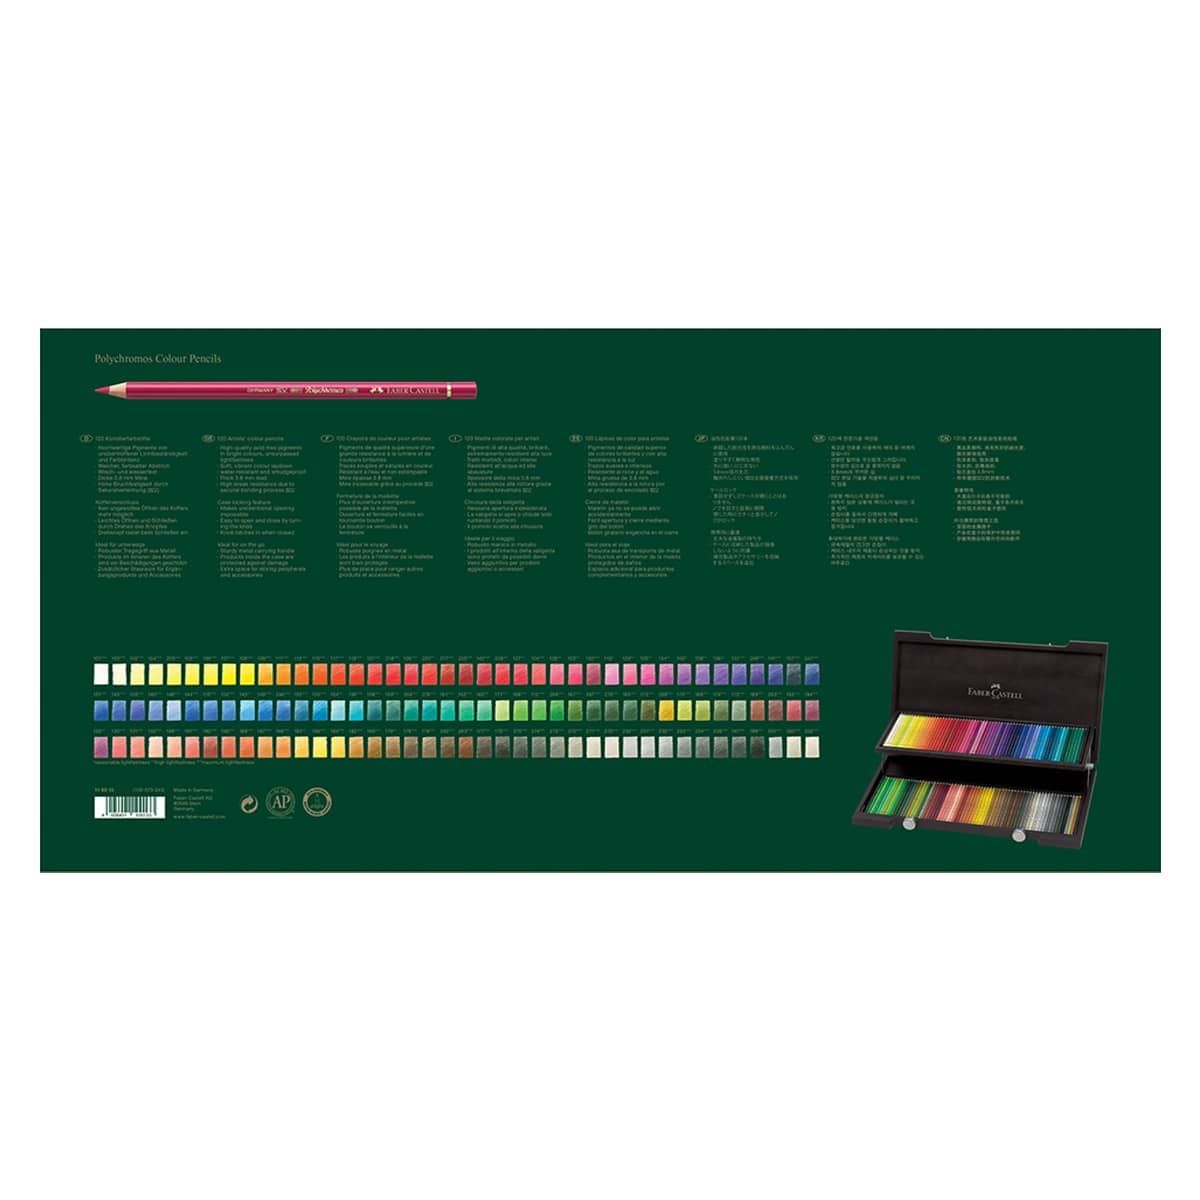 Faber-Castell Polychromos (Lápices de Colores) - Set de 120